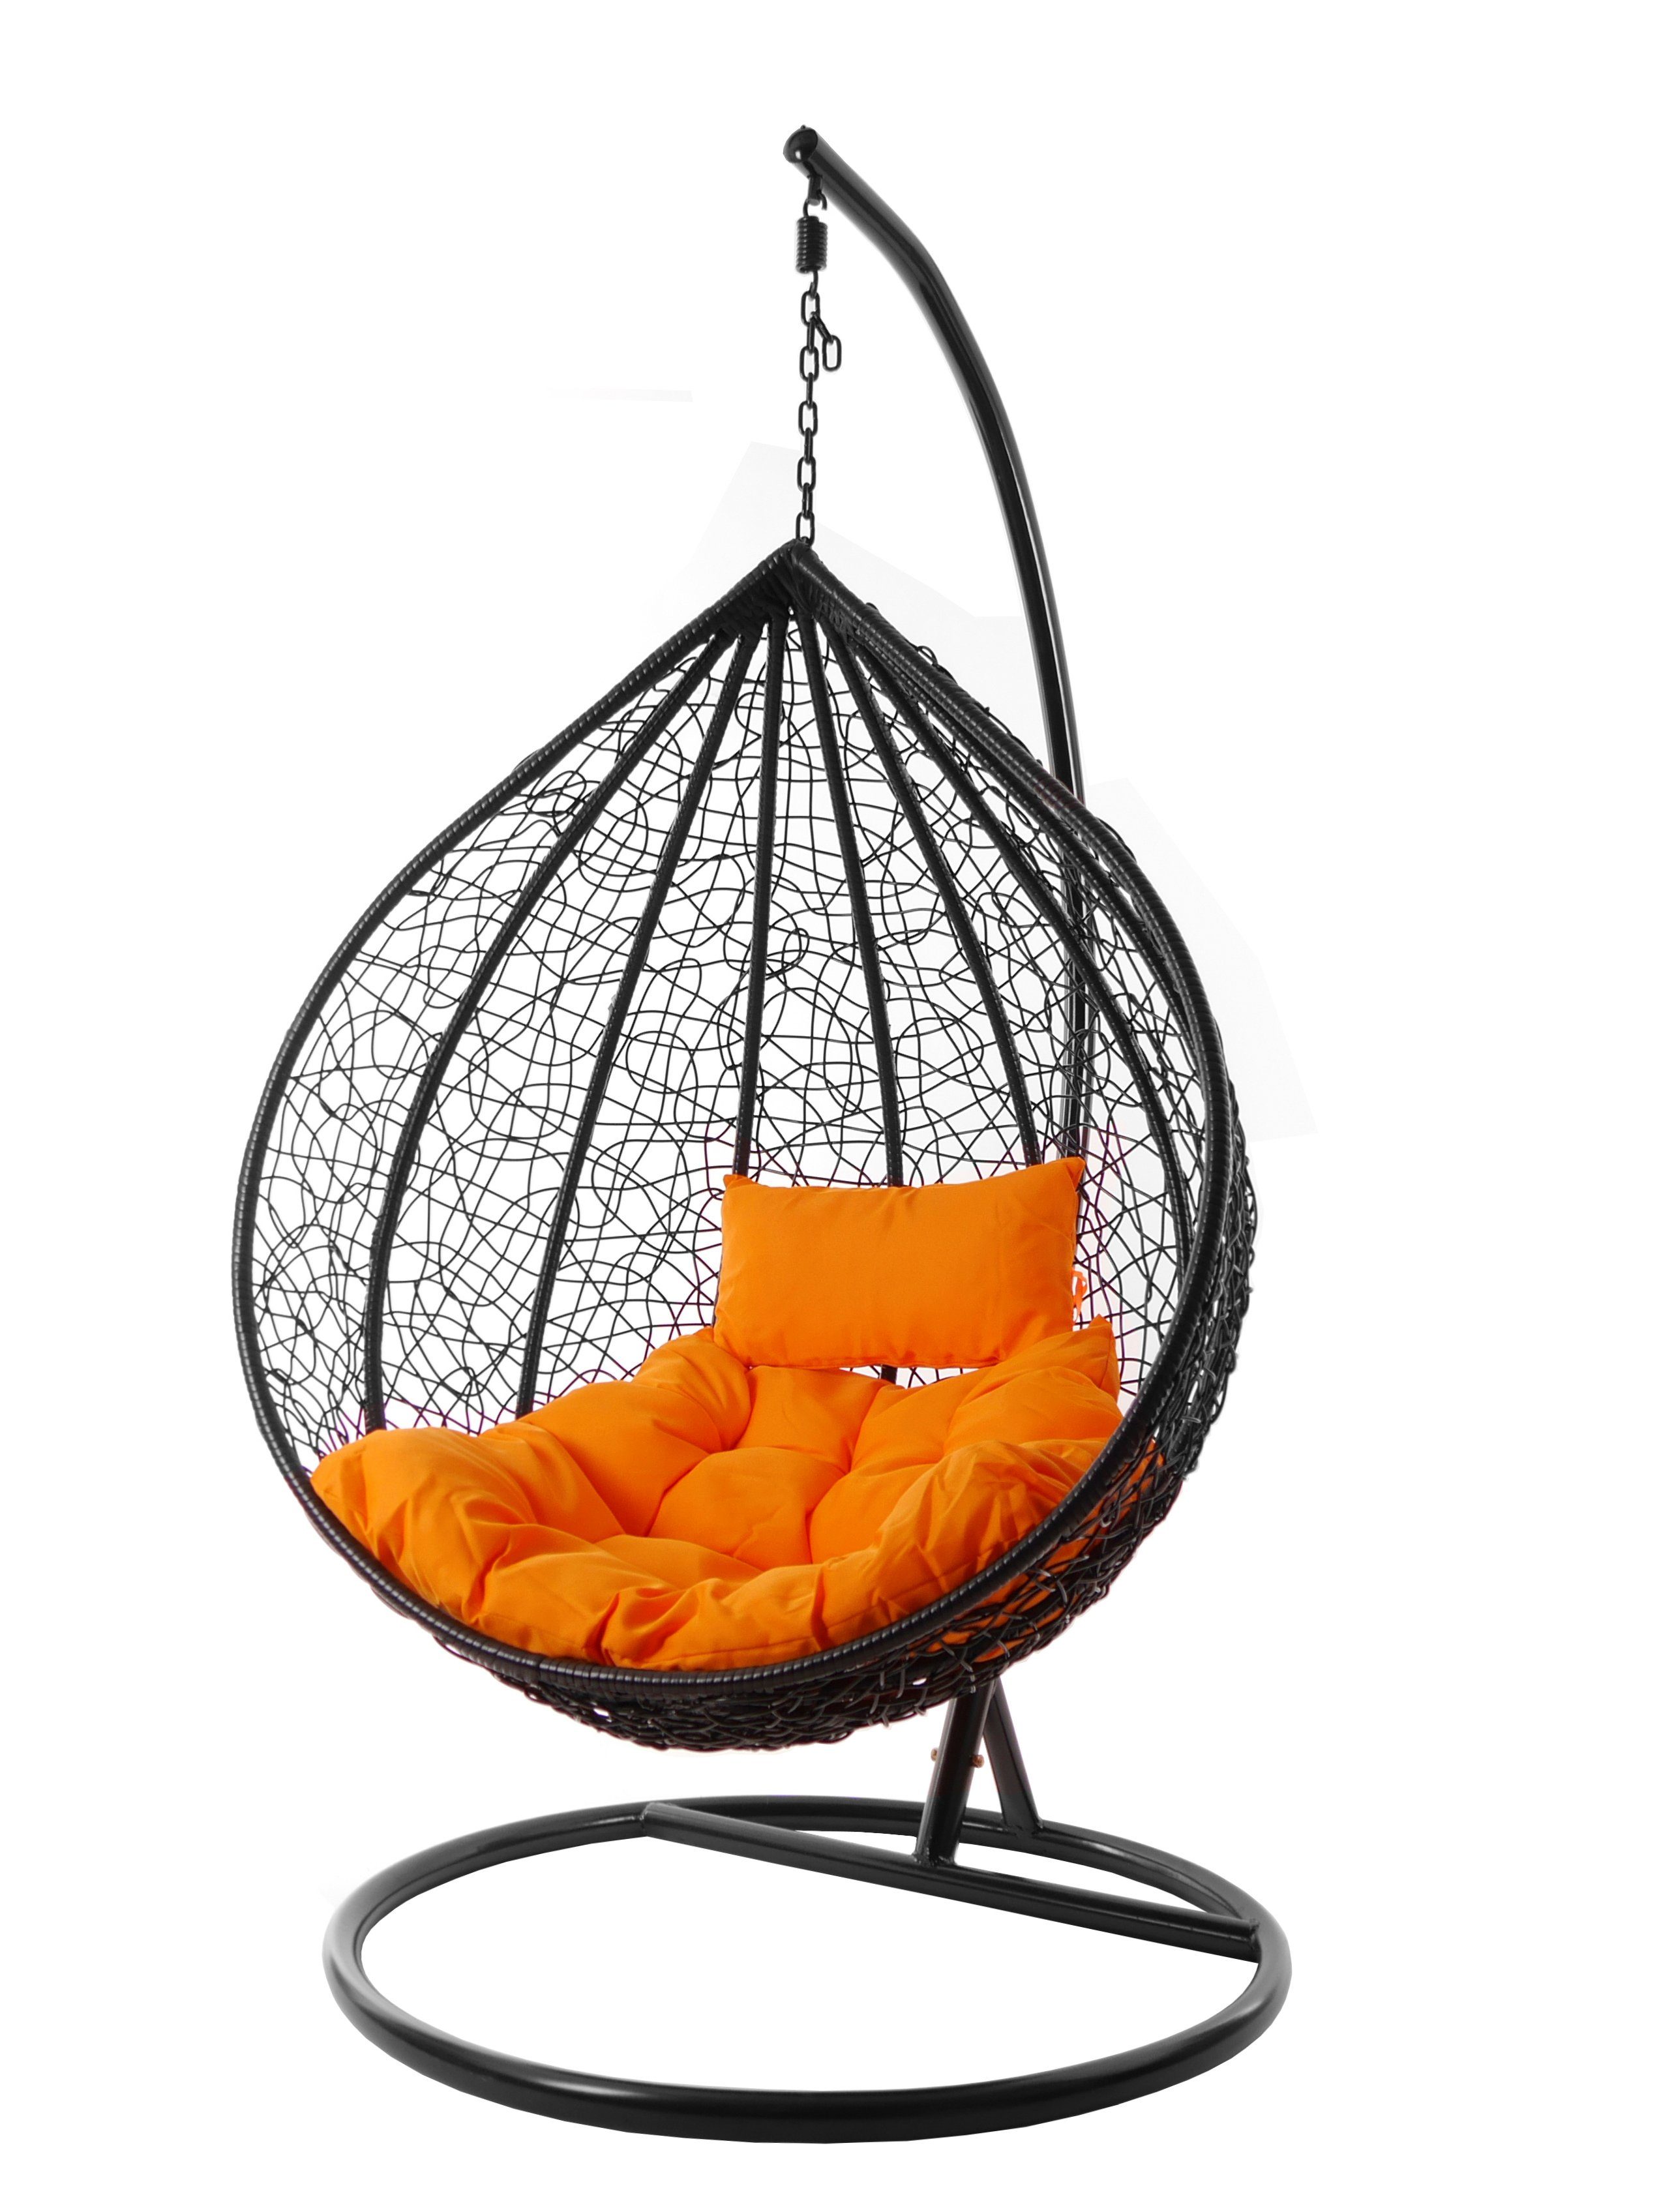 Kissen Hängesessel schwarz, Hängesessel orange Gestell moderner Swing schwarz, MANACOR Schwebesessel und inklusive edles tangerine) KIDEO Chair, (3030